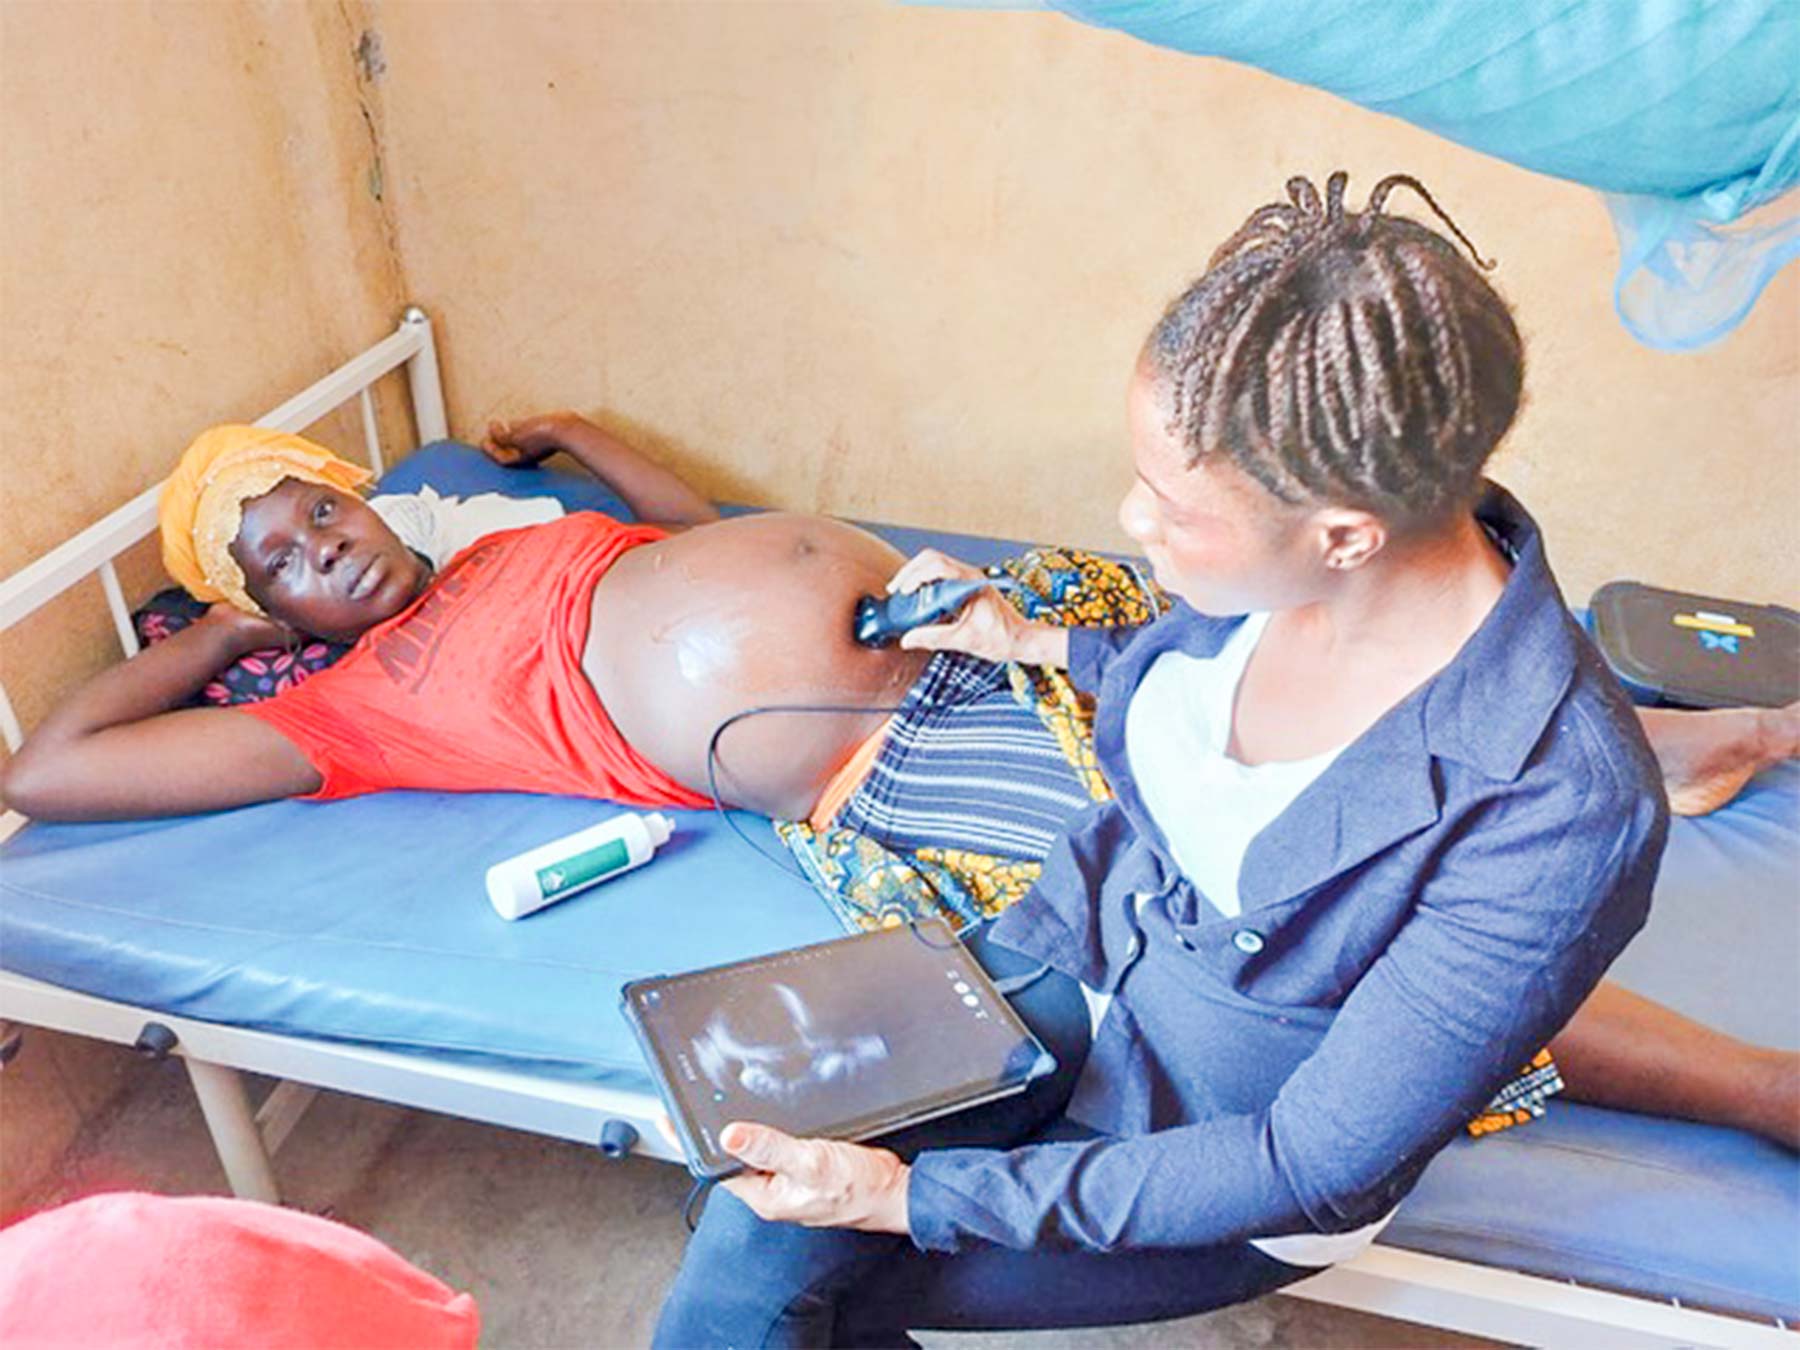 Masangaprojektet har udviklet en metode, så man ved hjælp af en ultralydsscanner og en tablet kan scanne gravide i sundhedsklinikker i isoleret beliggende områder.